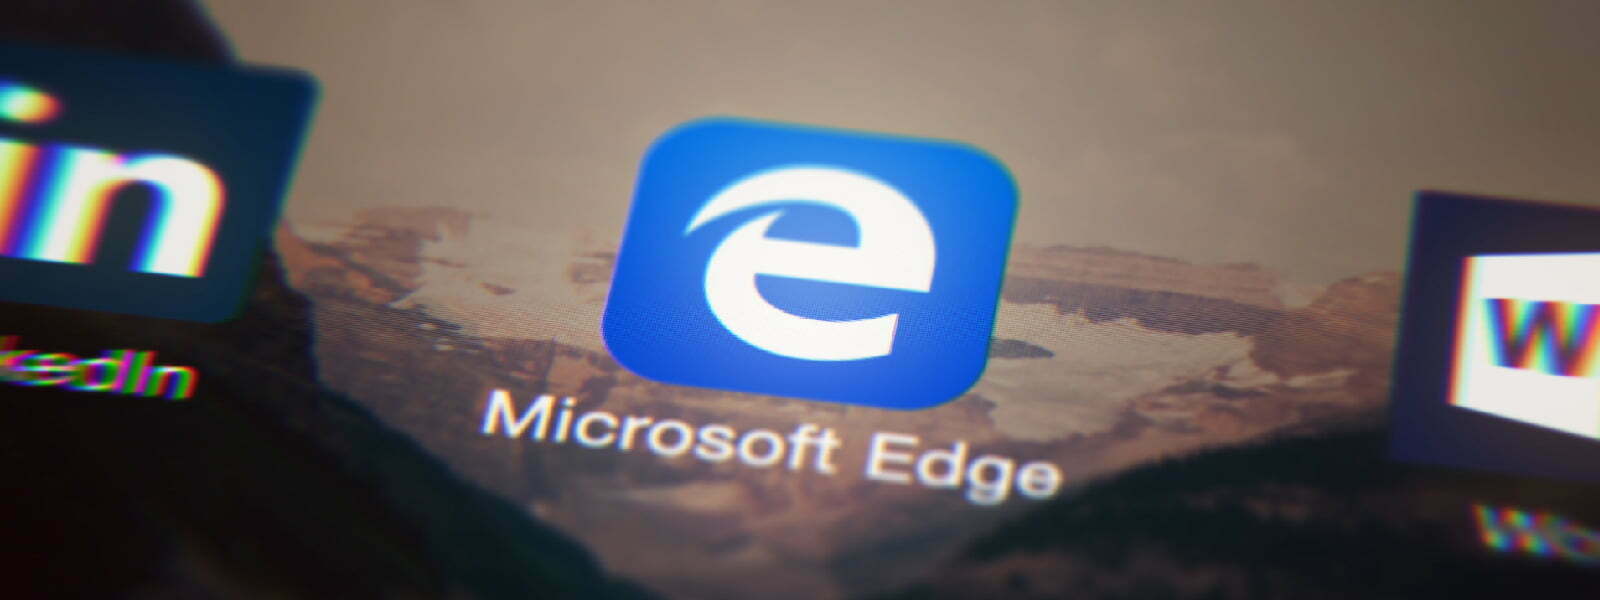 مایکروسافت Edge